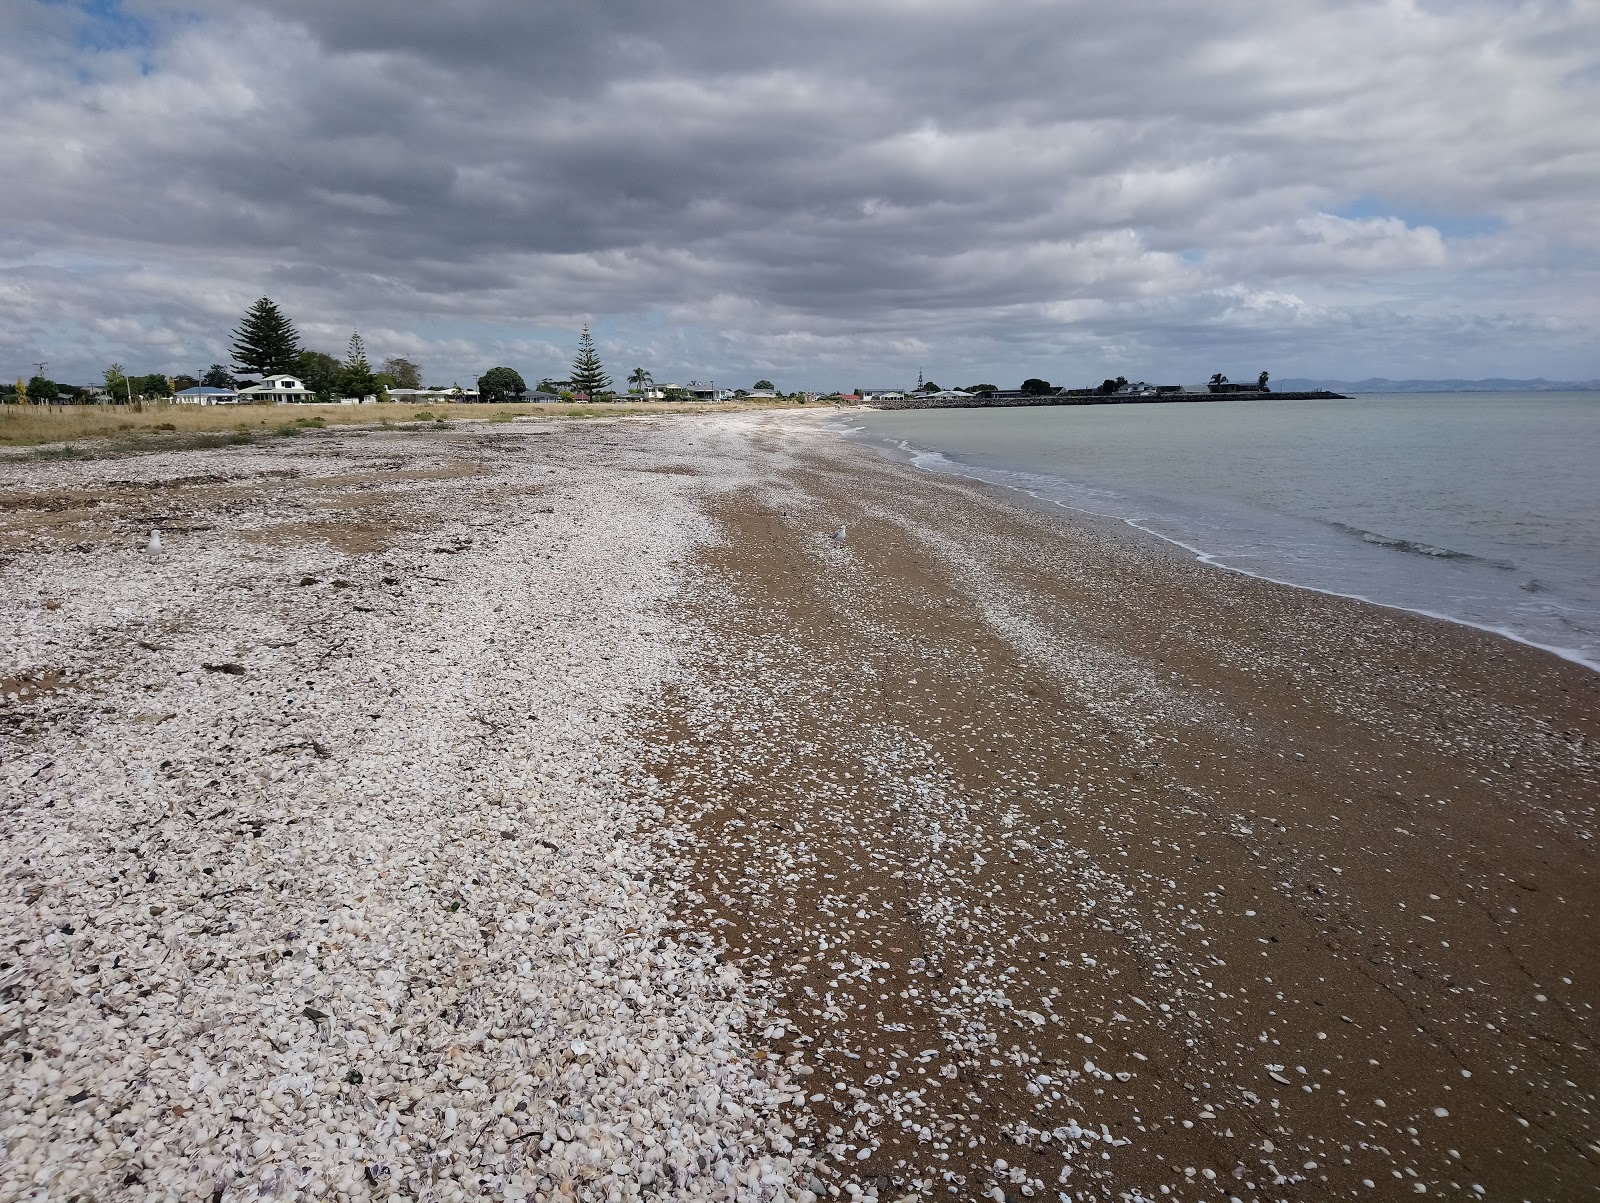 Kuranui Bay'in fotoğrafı hafif ince çakıl taş yüzey ile